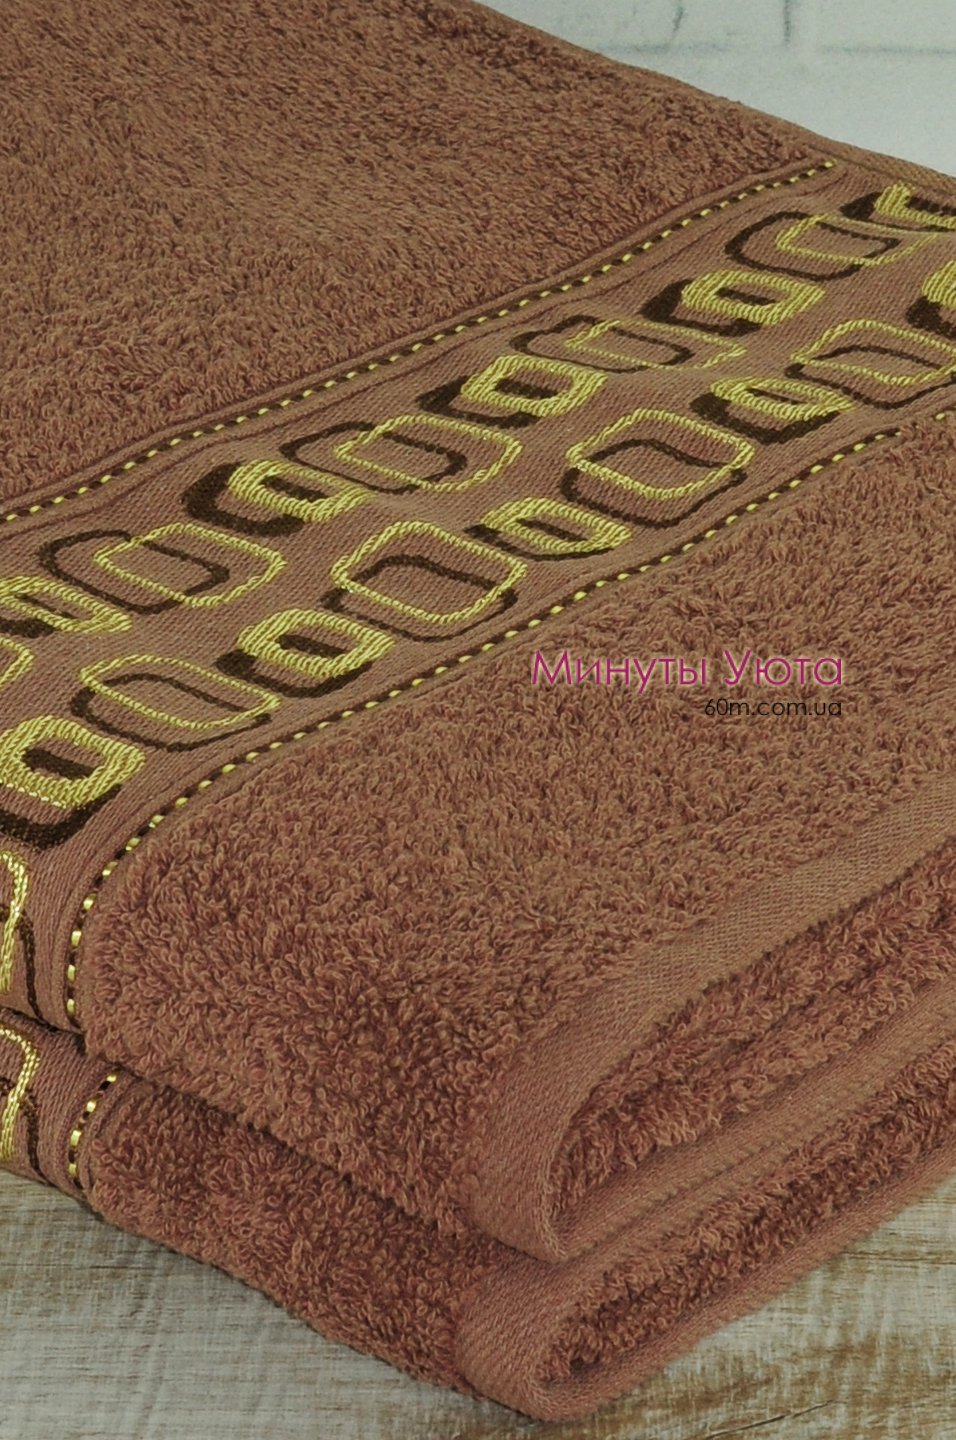 Хлопковое банное полотенце в коричневом цвете 